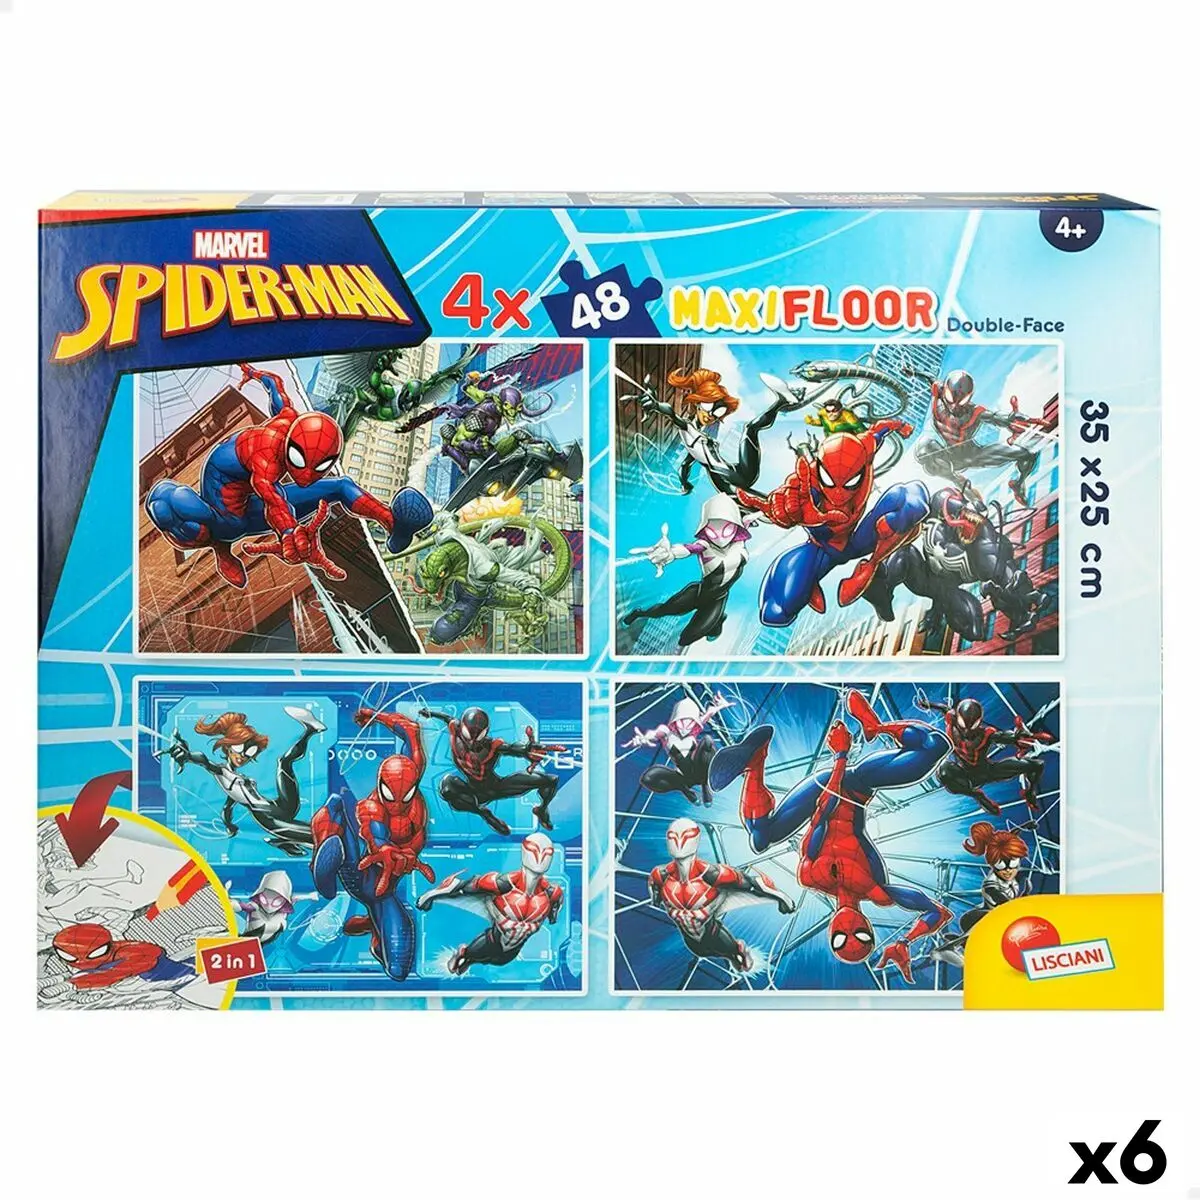 Puzzle per Bambini Spider-Man Double-face 4 in 1 48 Pezzi 35 x 1,5 x 25 cm (6 Unità)